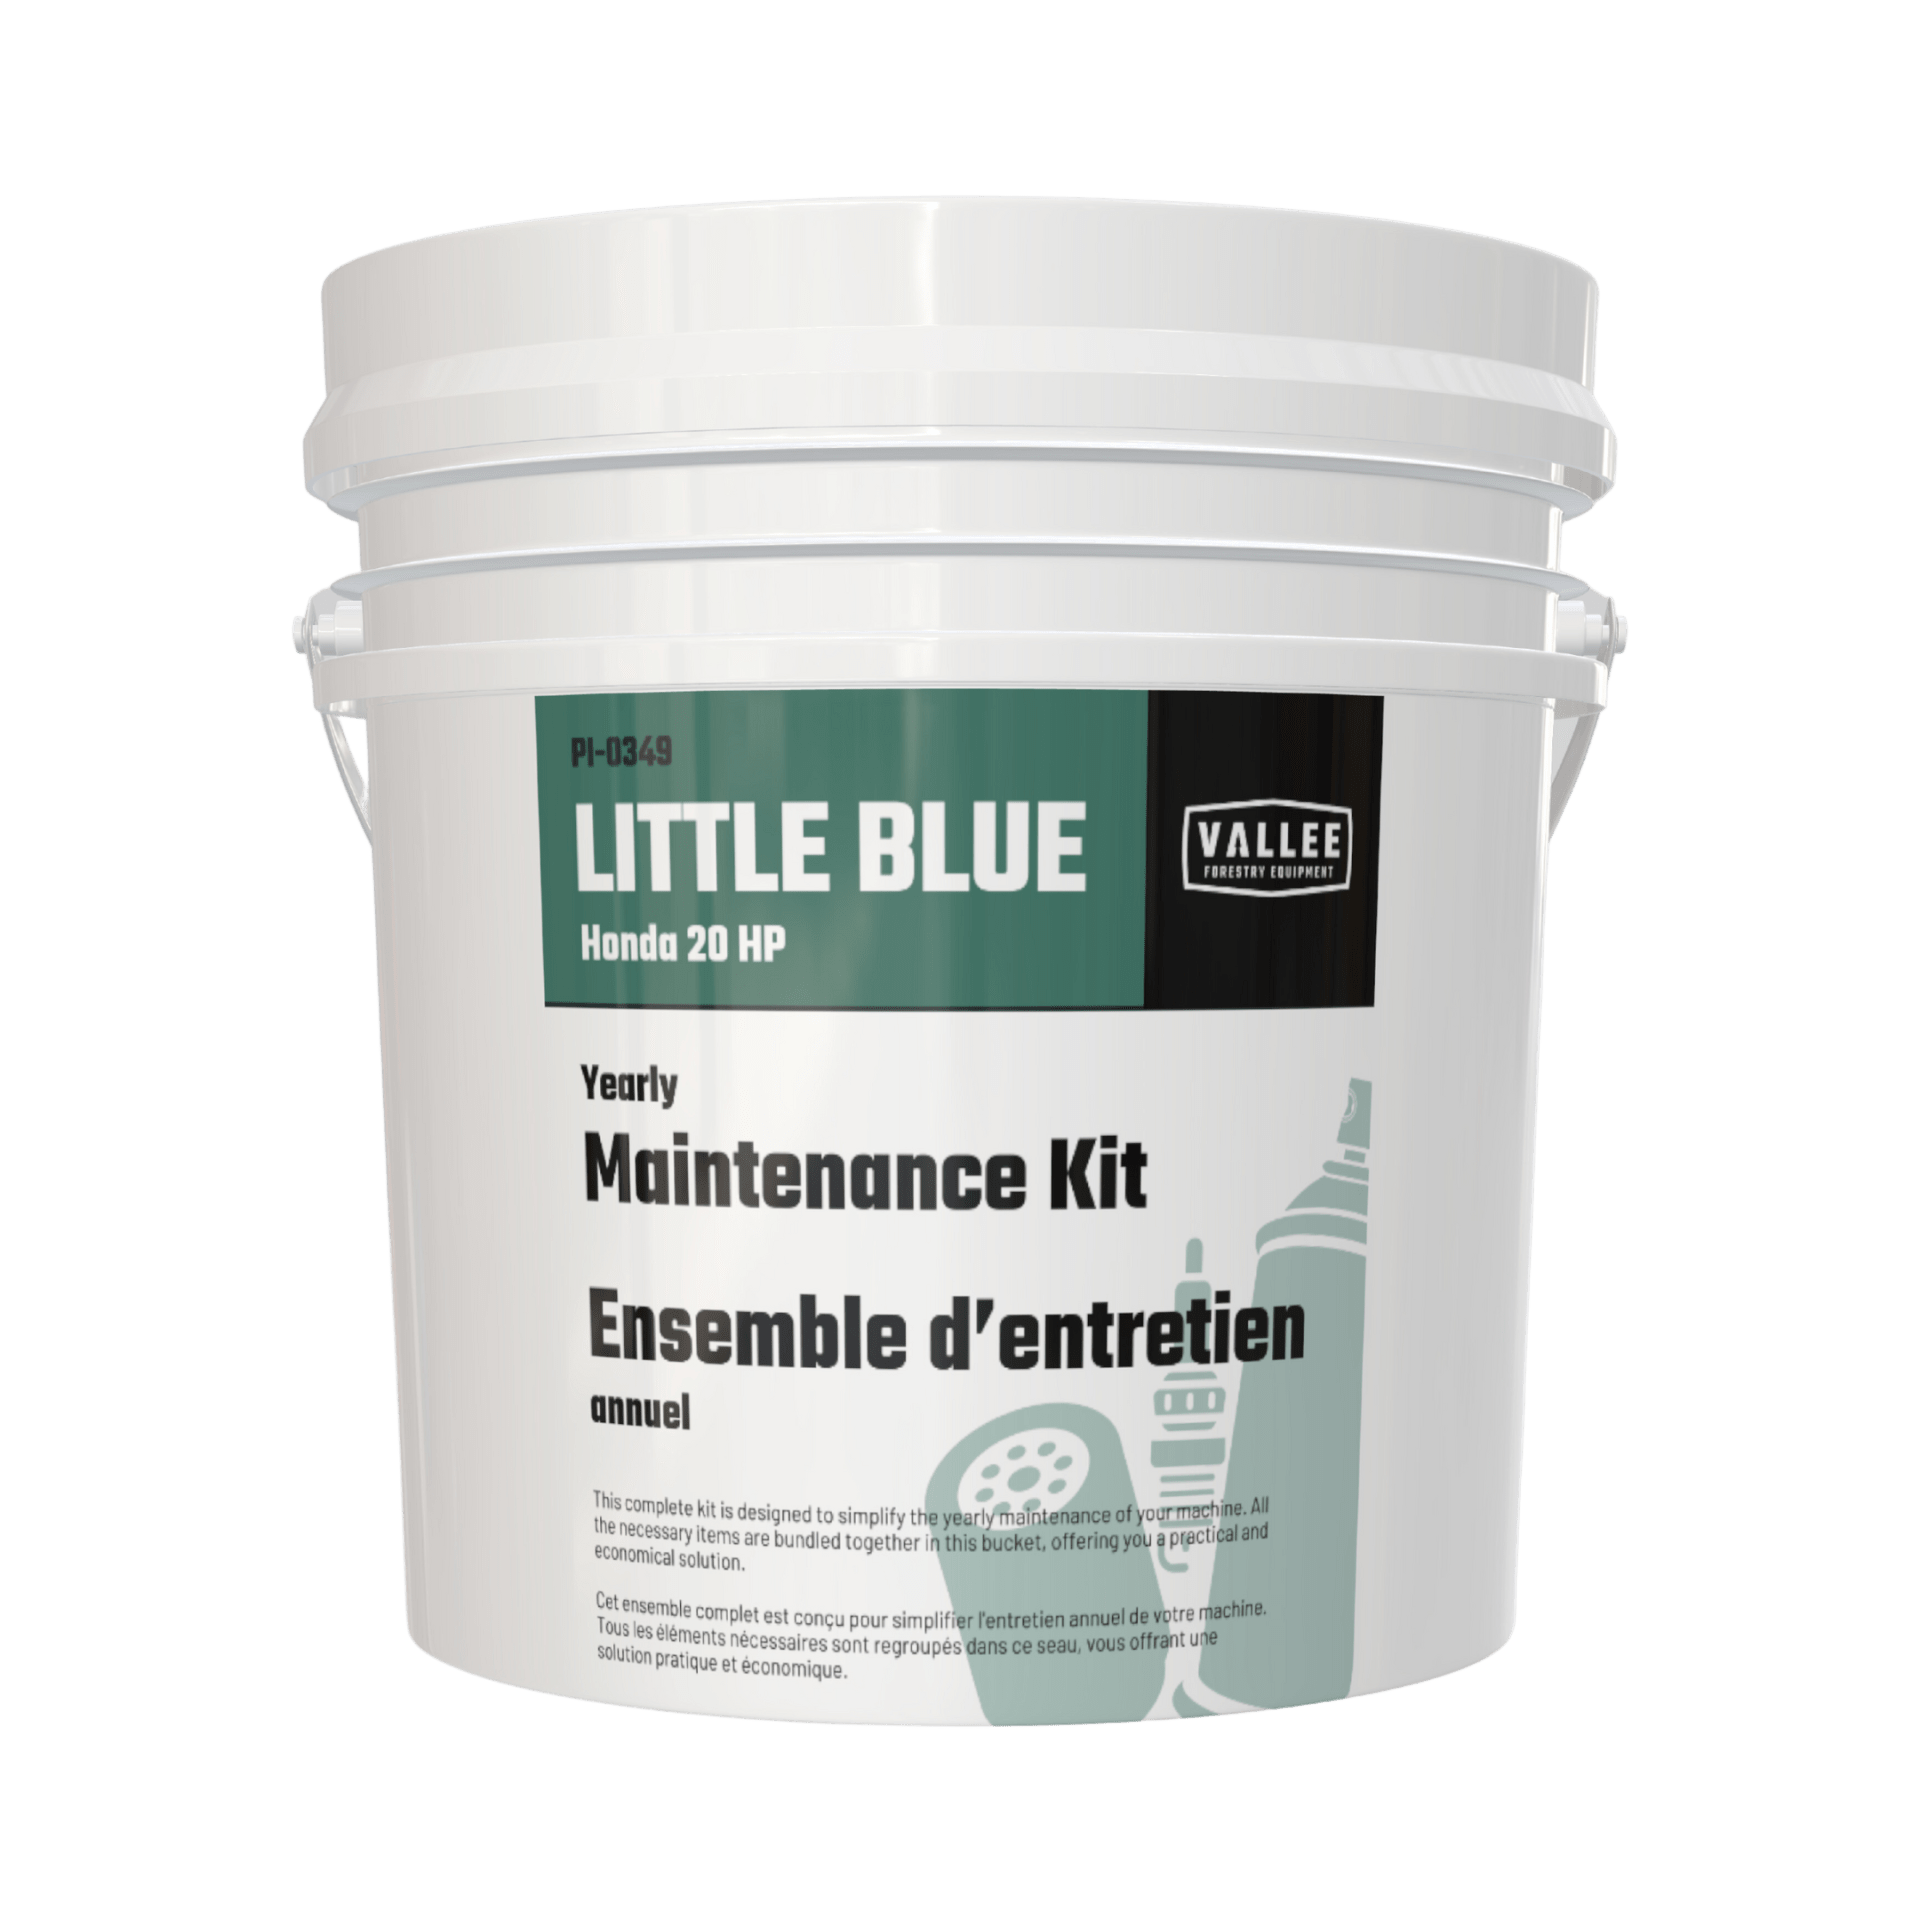 Maintenance Kit for Little Blue 20HP